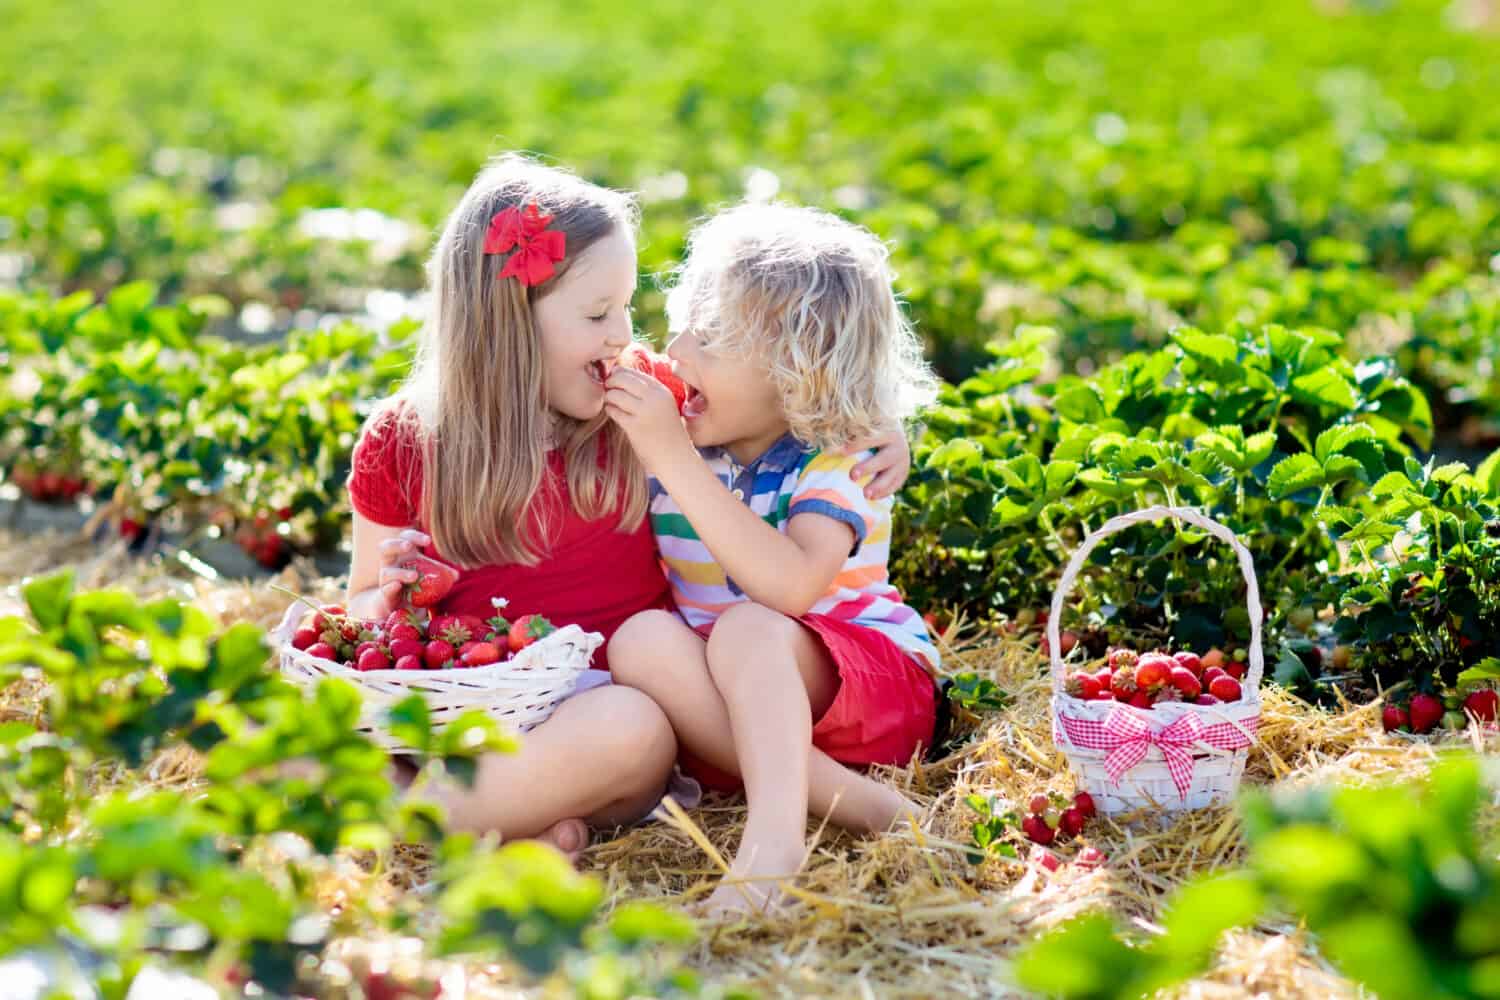 Bambini che raccolgono fragole nel campo della fattoria di frutta nella soleggiata giornata estiva.  I bambini raccolgono fragole biologiche mature fresche nel cesto bianco per scegliere la tua piantagione di bacche.  Ragazzo e ragazza che mangiano fragole.